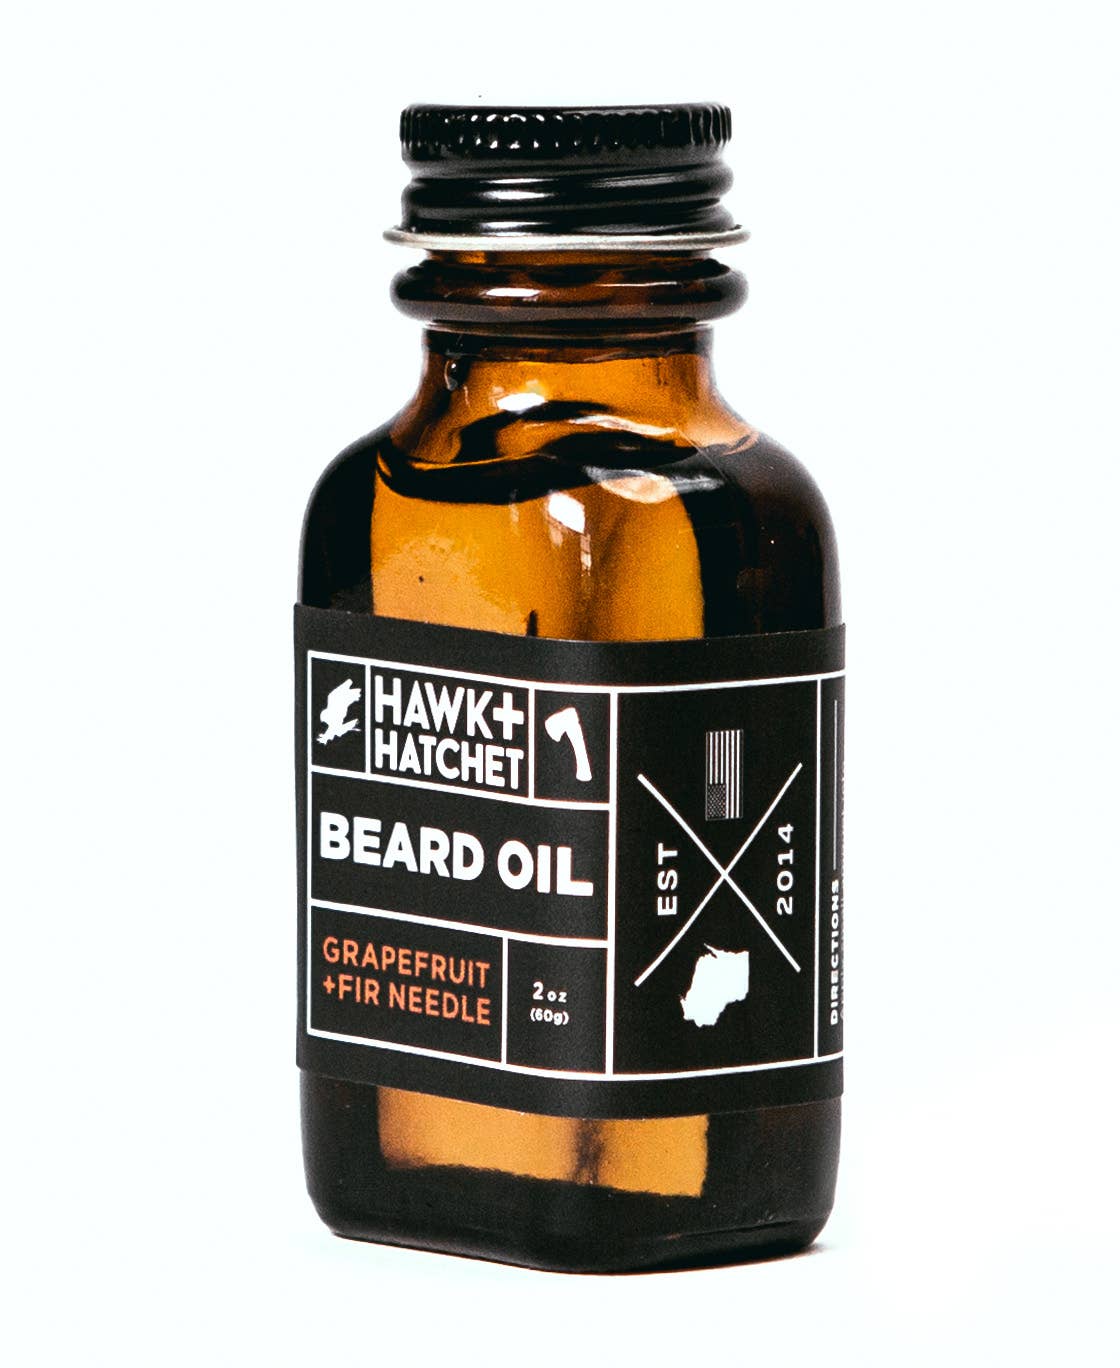 "Hawk & Hatchet" Beard Oil